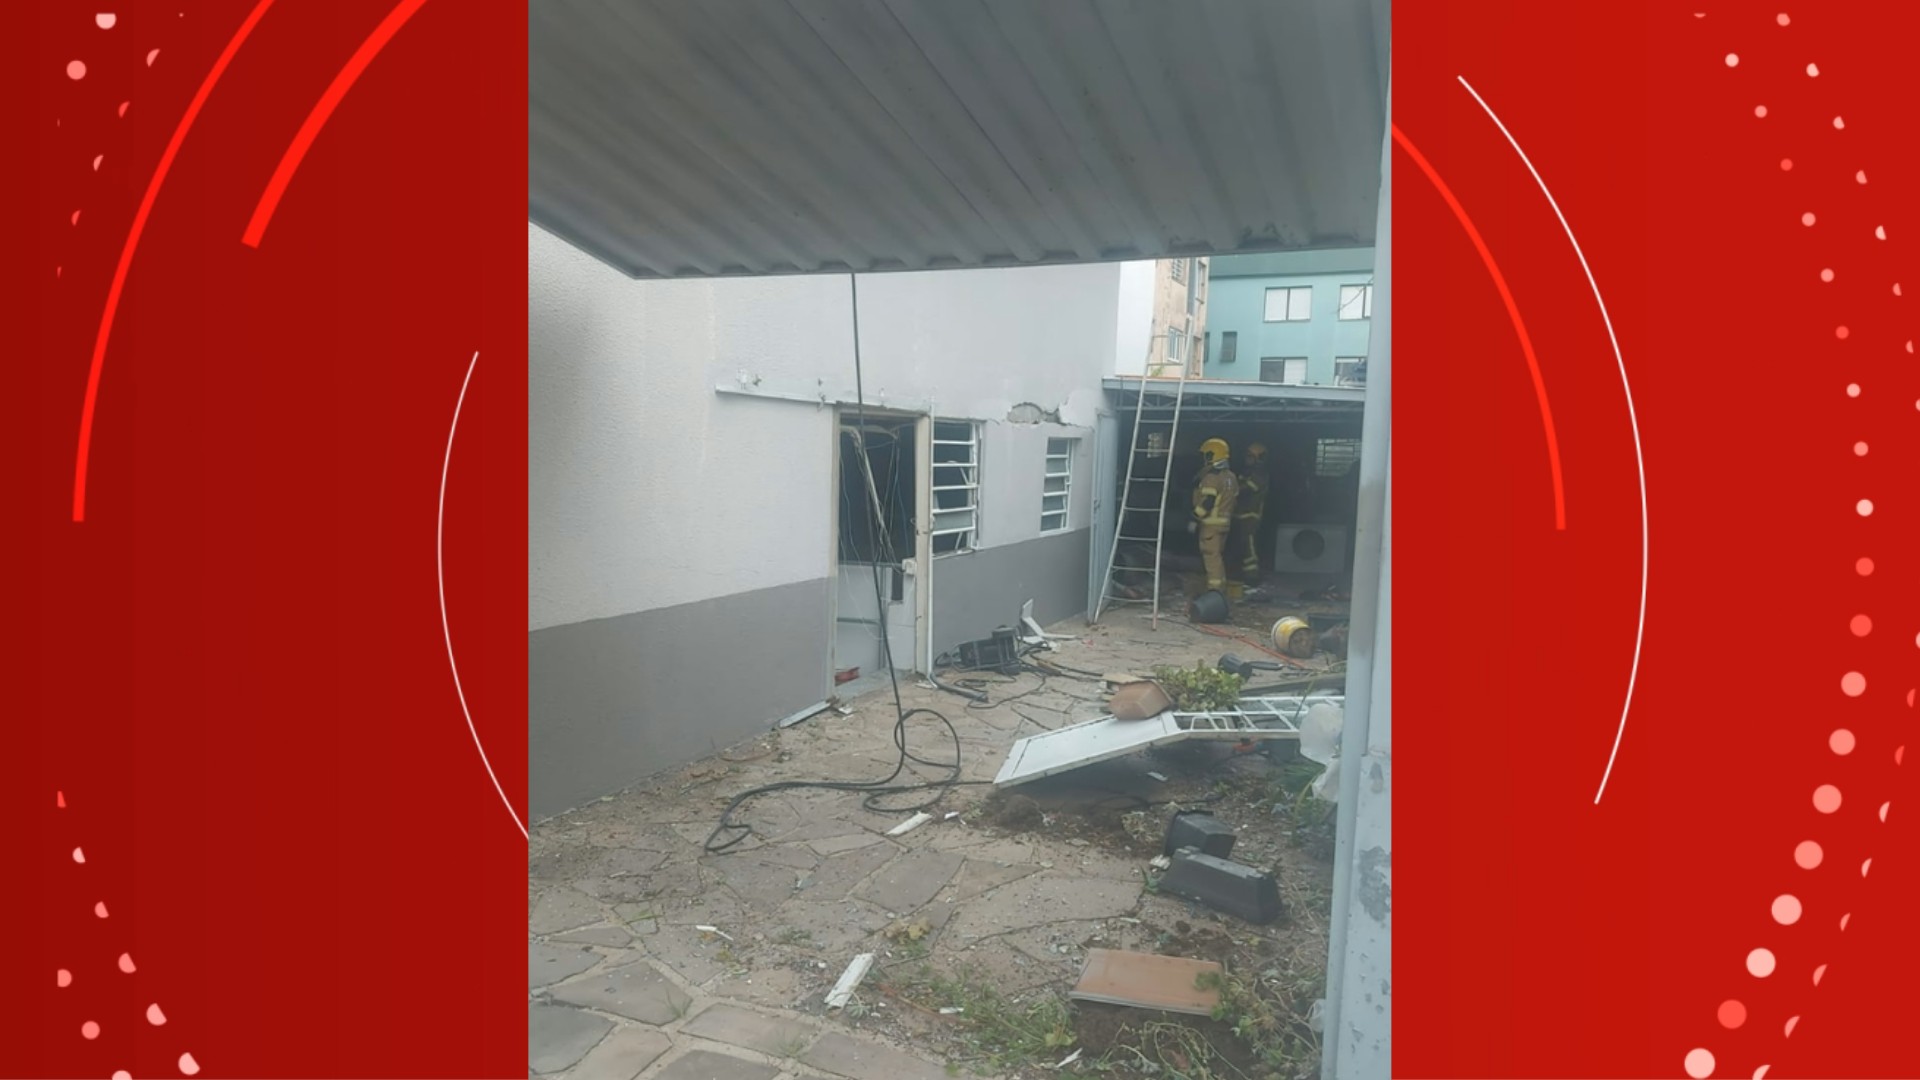 Morre idosa atingida por explosão de botijão de gás em prédio de Caxias do Sul 